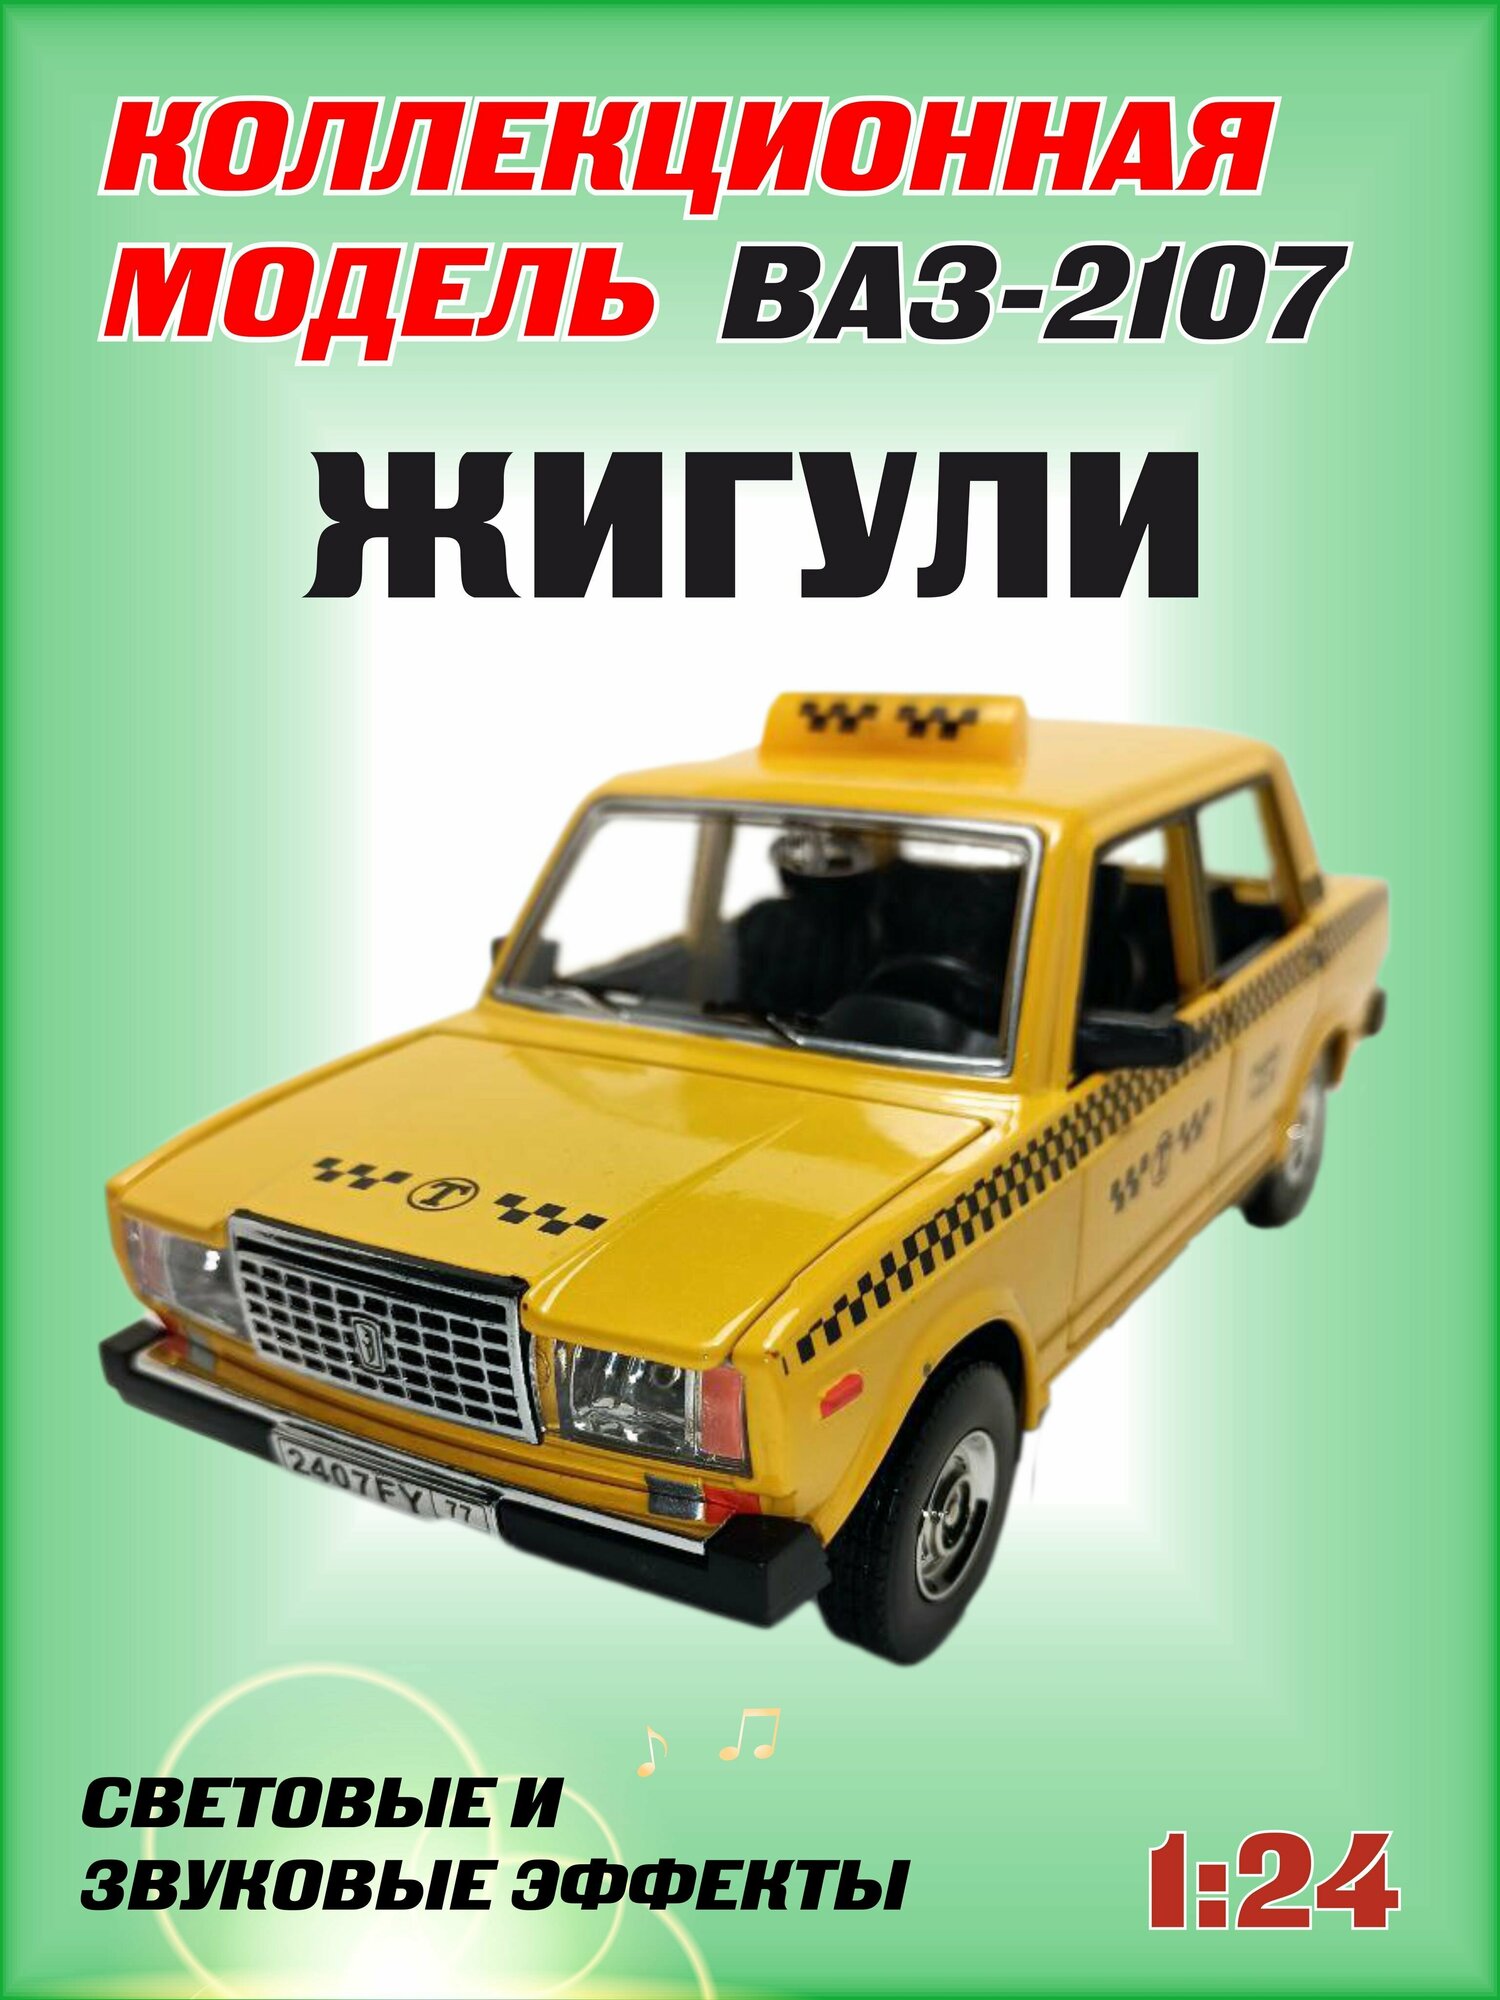 Коллекционная машинка игрушка металлическая Жигули ВАЗ 2107 для мальчиков масштабная модель 1:24 такси желтый